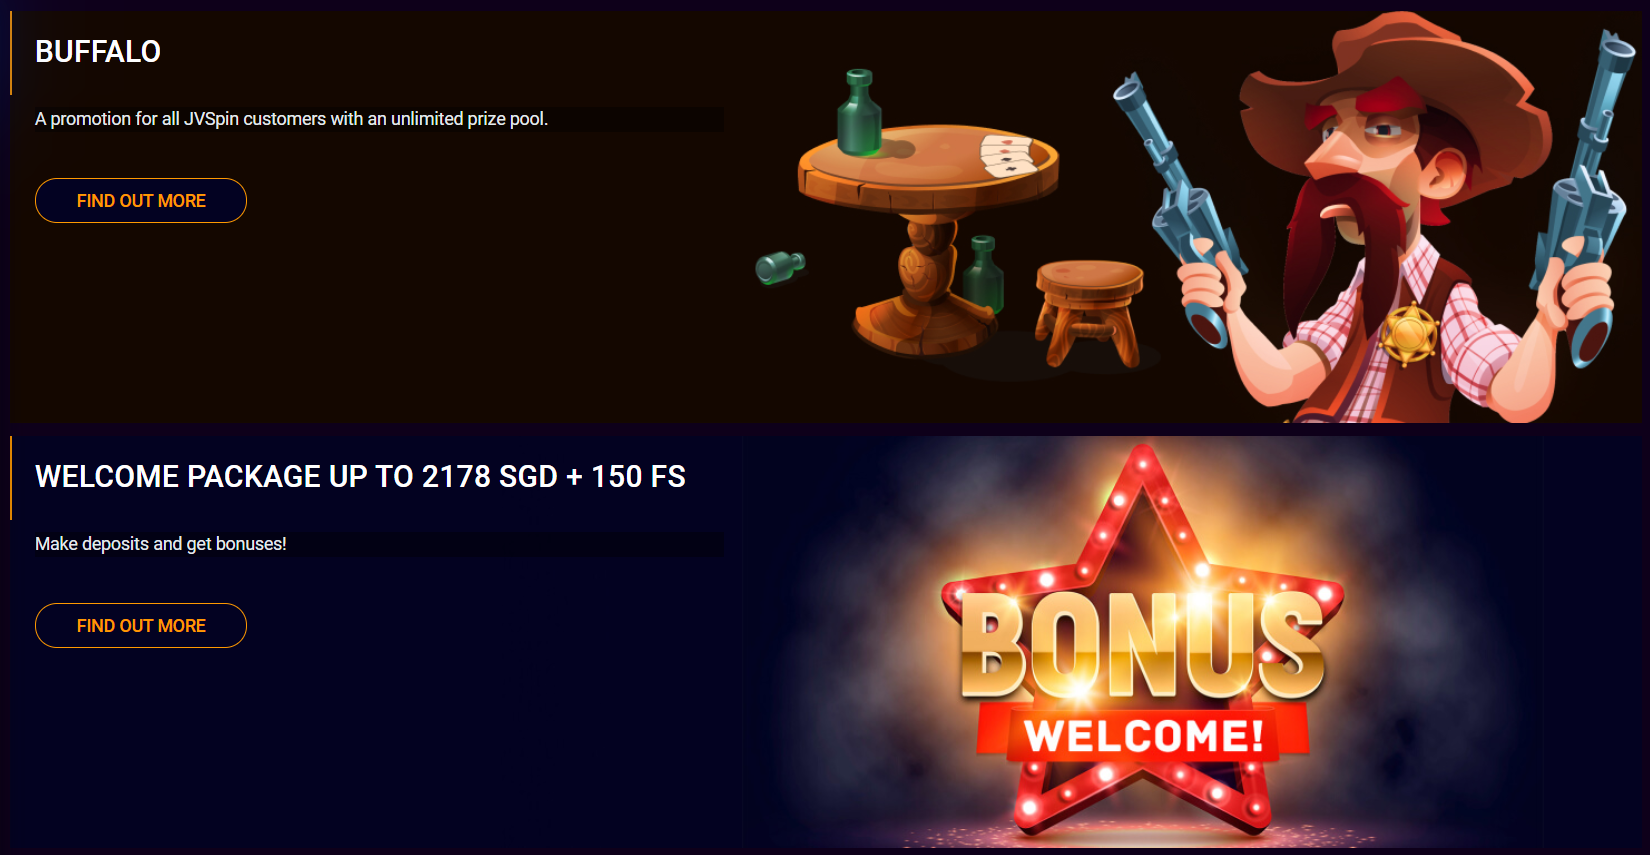 Jv spin casino-da bonuslar və promosyonlar